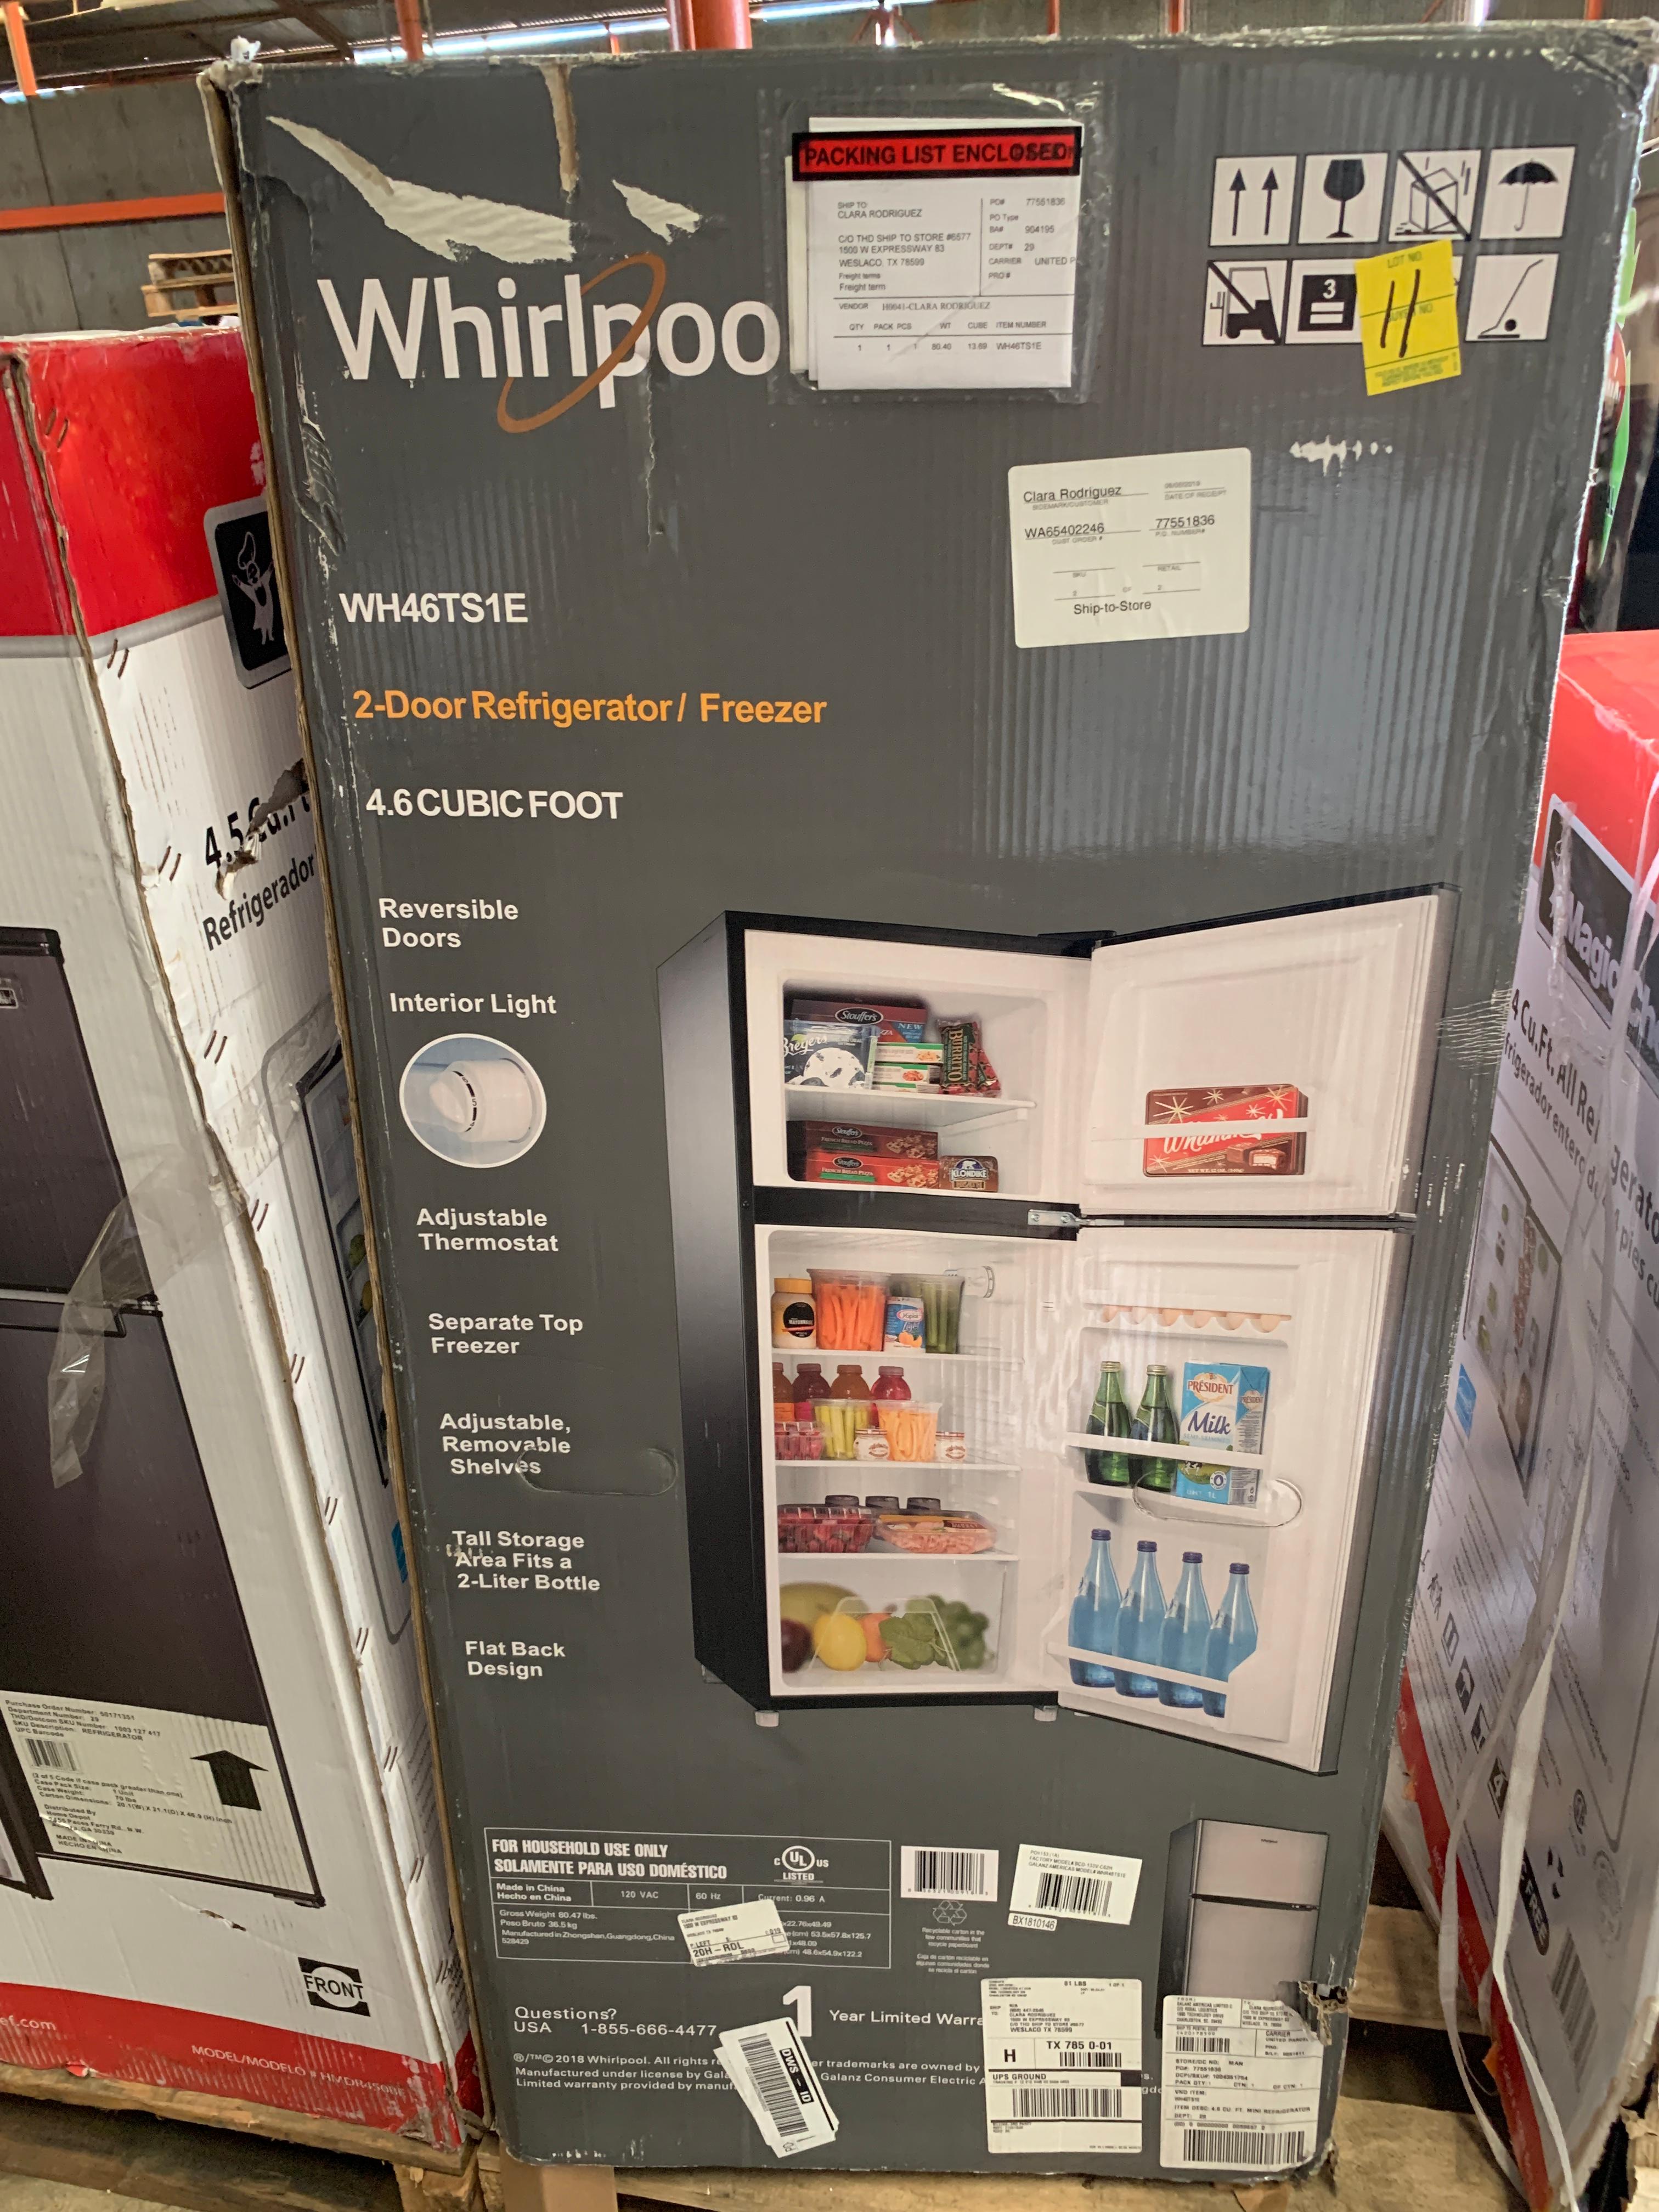 Whirlpool 4.6 Cu. Ft. 2-door Refrigerator/freezer